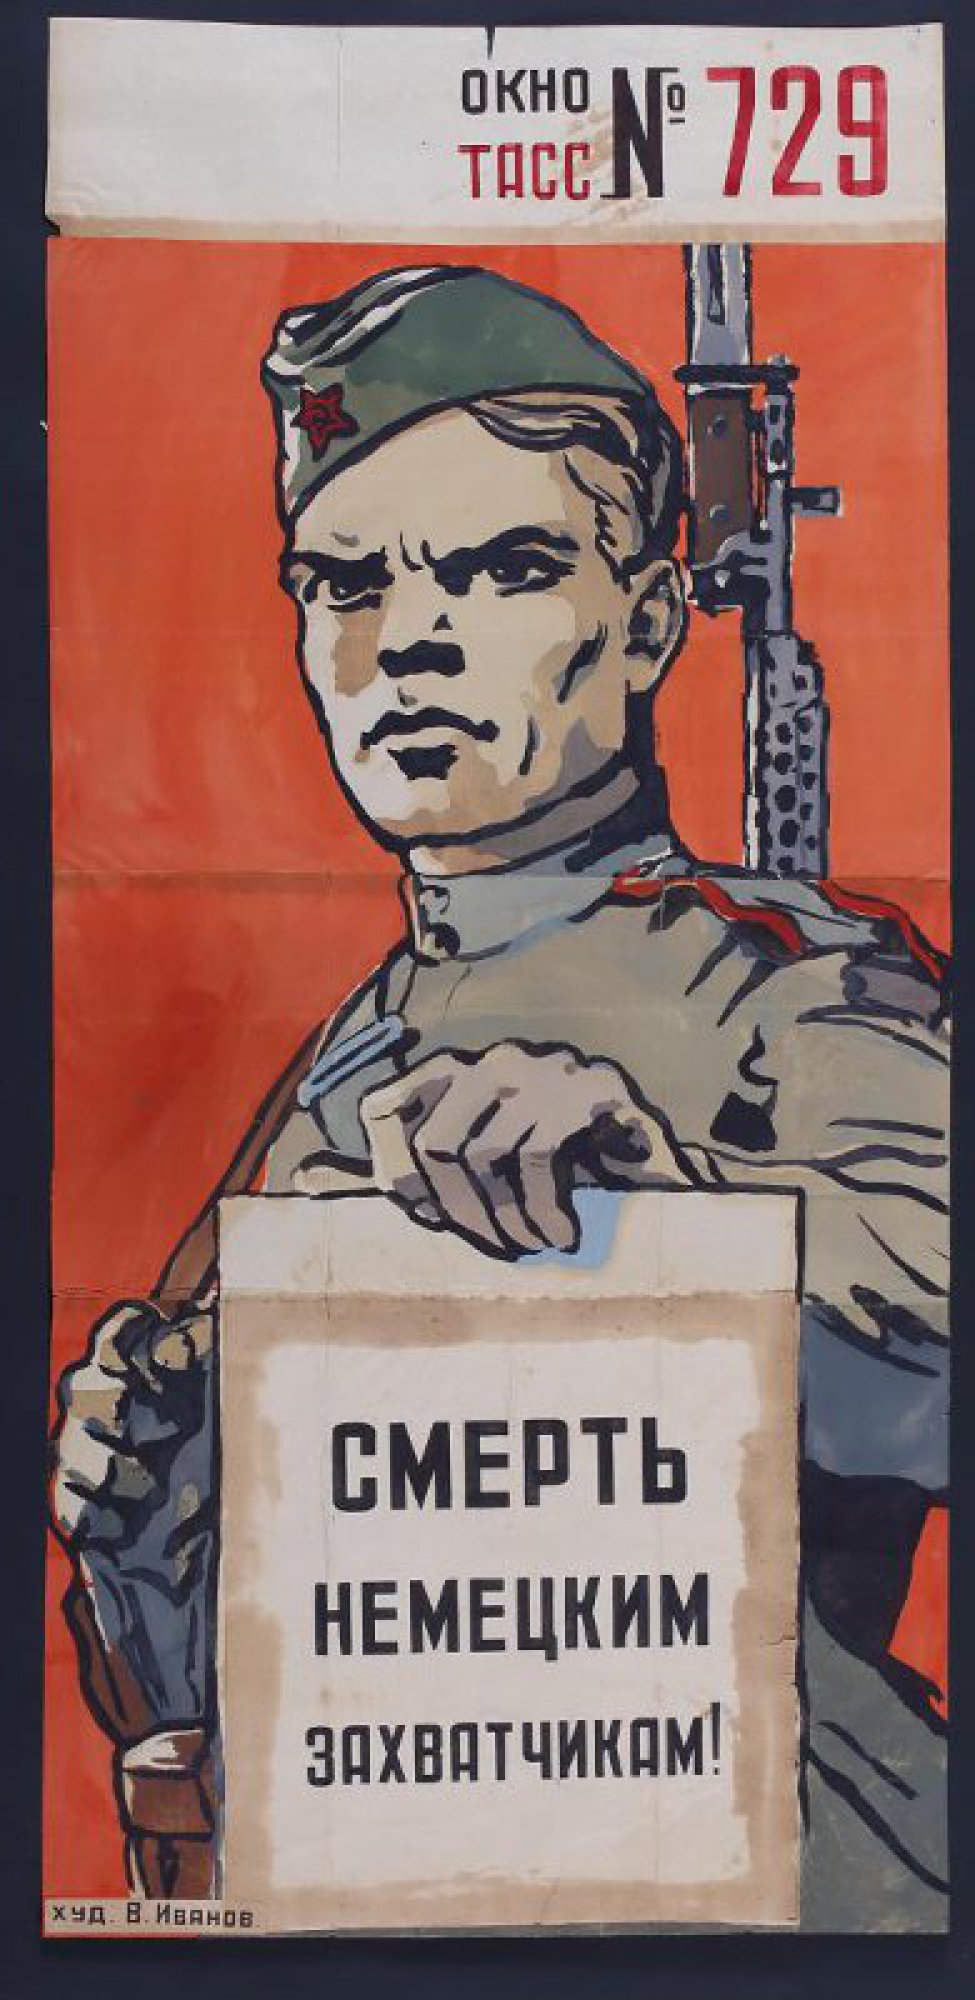 Изображено: боец Советской Армии с автоматом за плечами, в руке держит лист бумаги с надписью: " Смерть немецким захватчикам!"